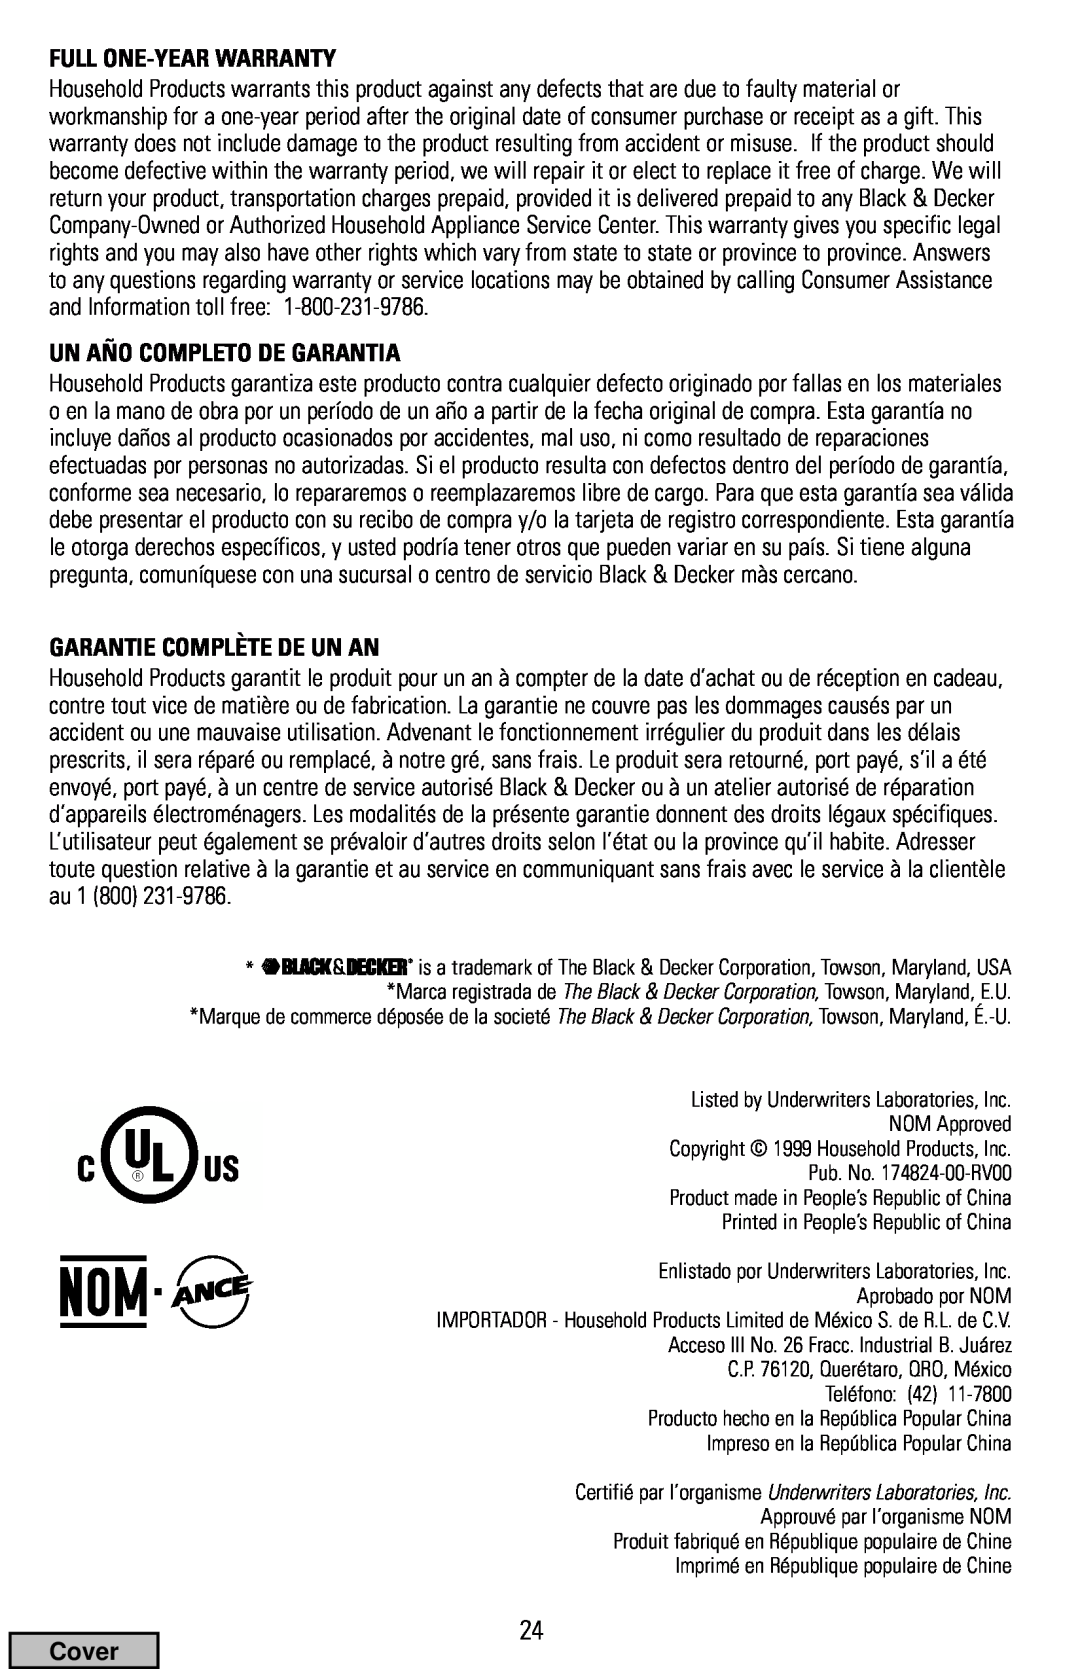 Black & Decker FP1400 Series manual Full One-Year Warranty, Un Año Completo De Garantia, Garantie Complète De Un An, Cover 